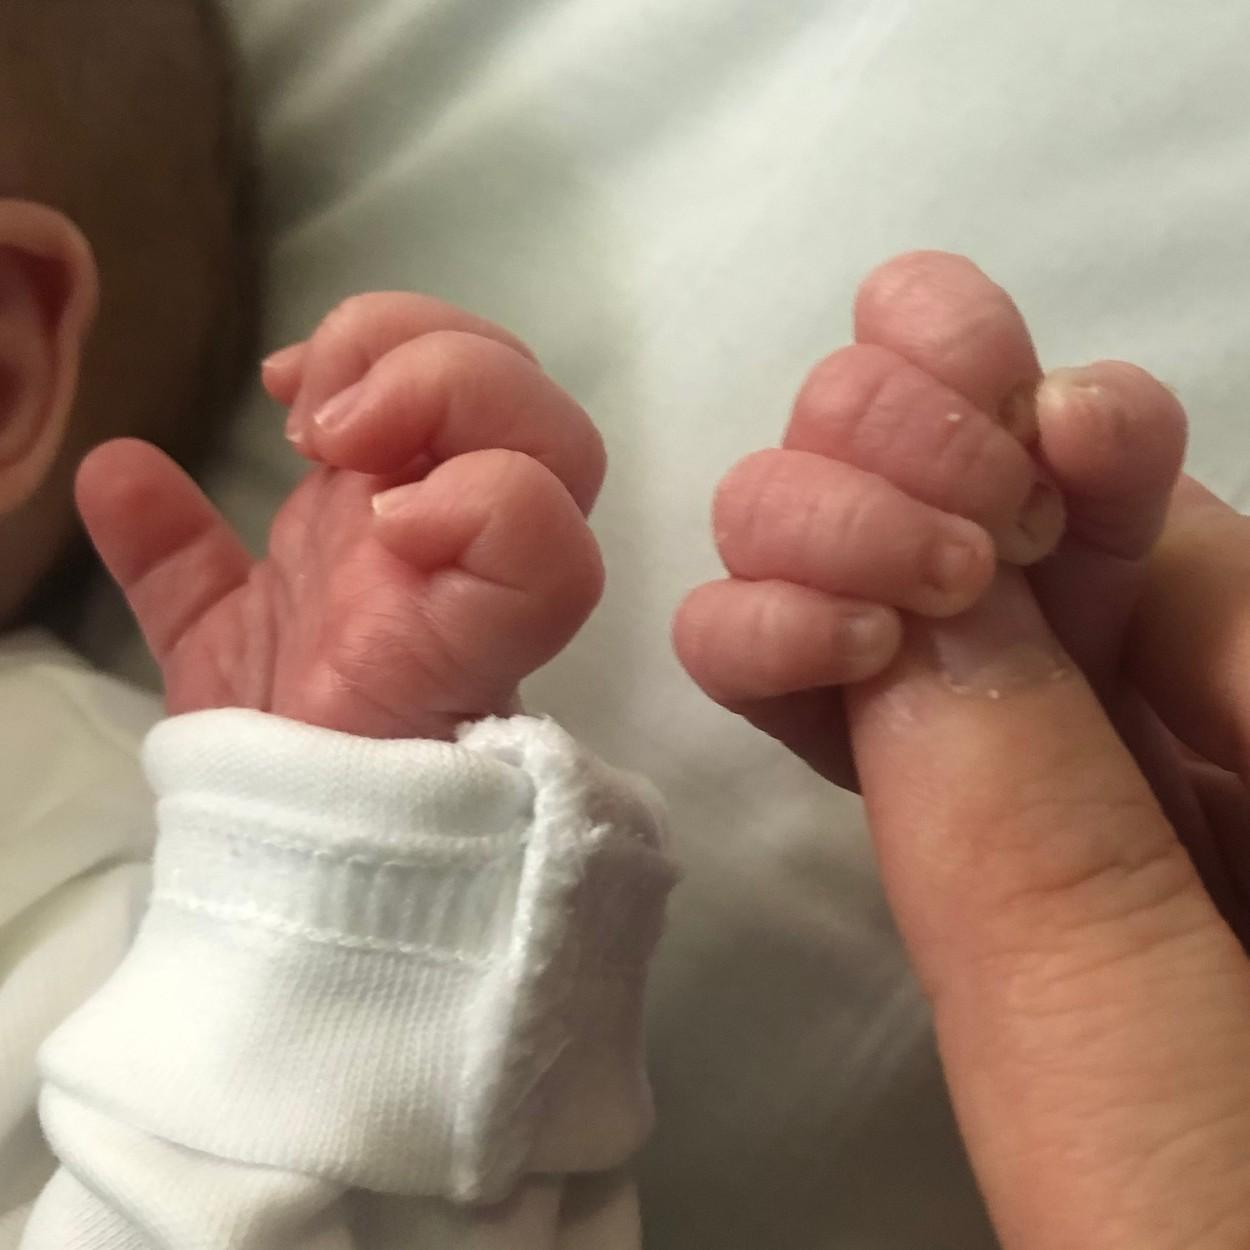 doua maini de bebelus iar in una dintre ele se afla un deget de adult